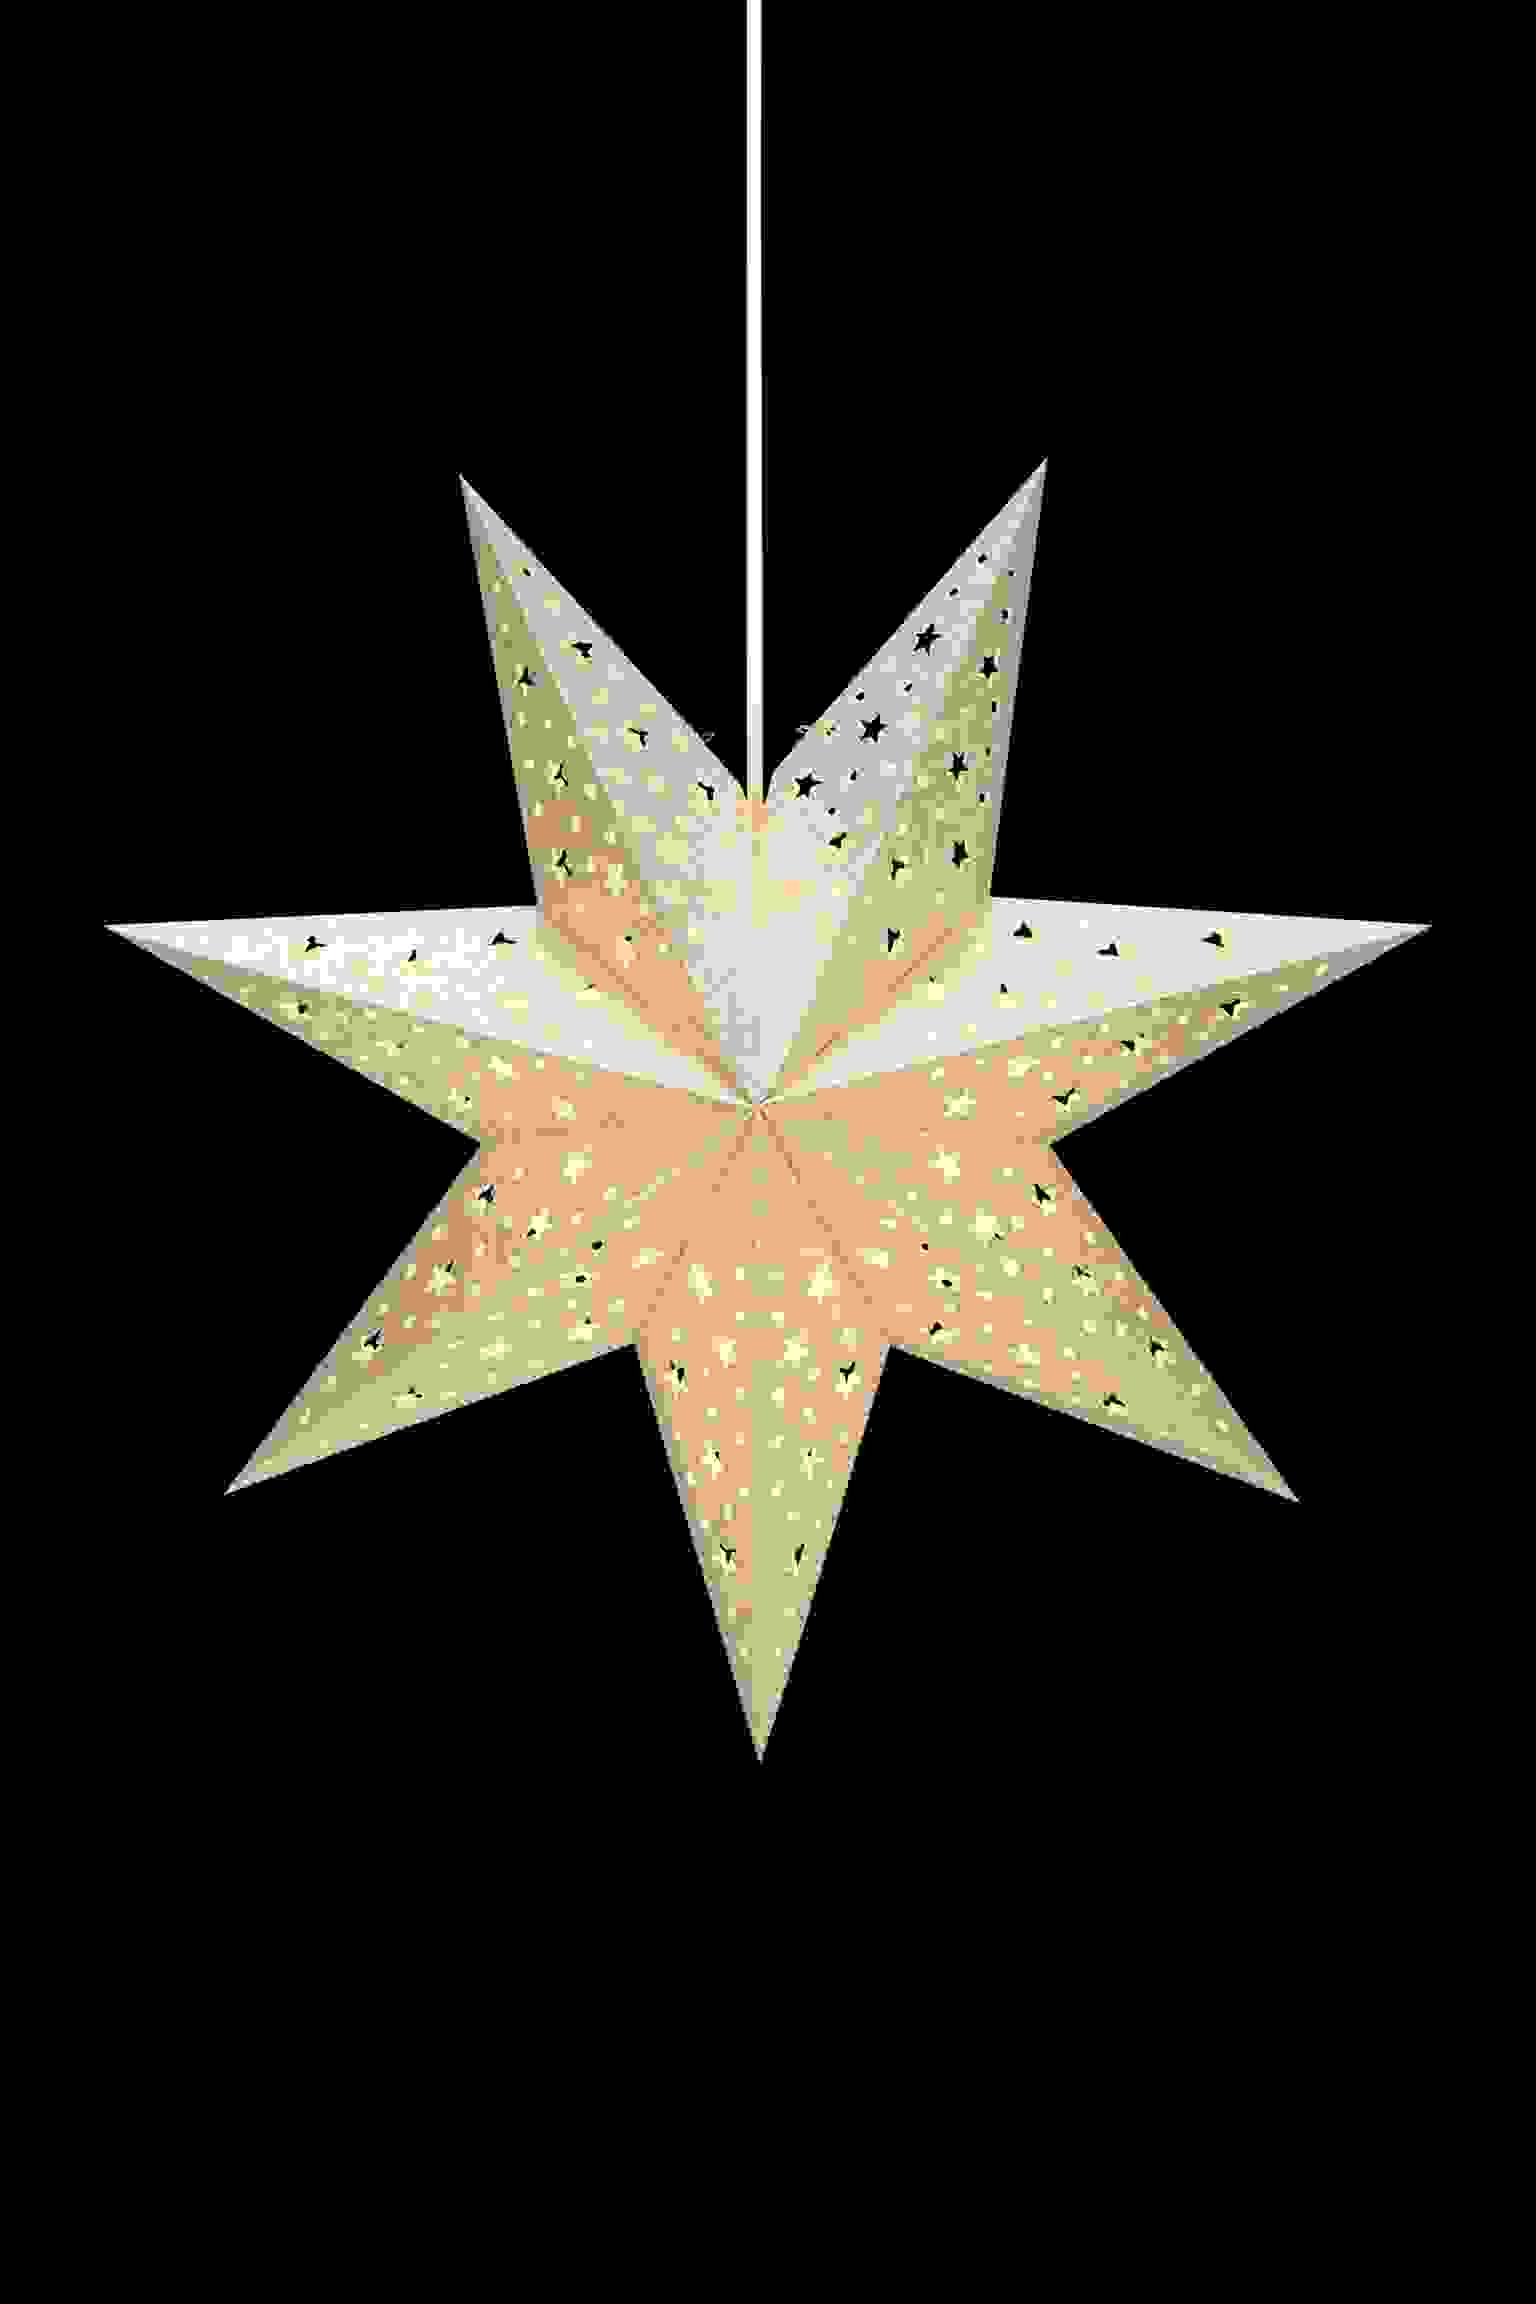 Solvalla - Stjärna Guld 45cm